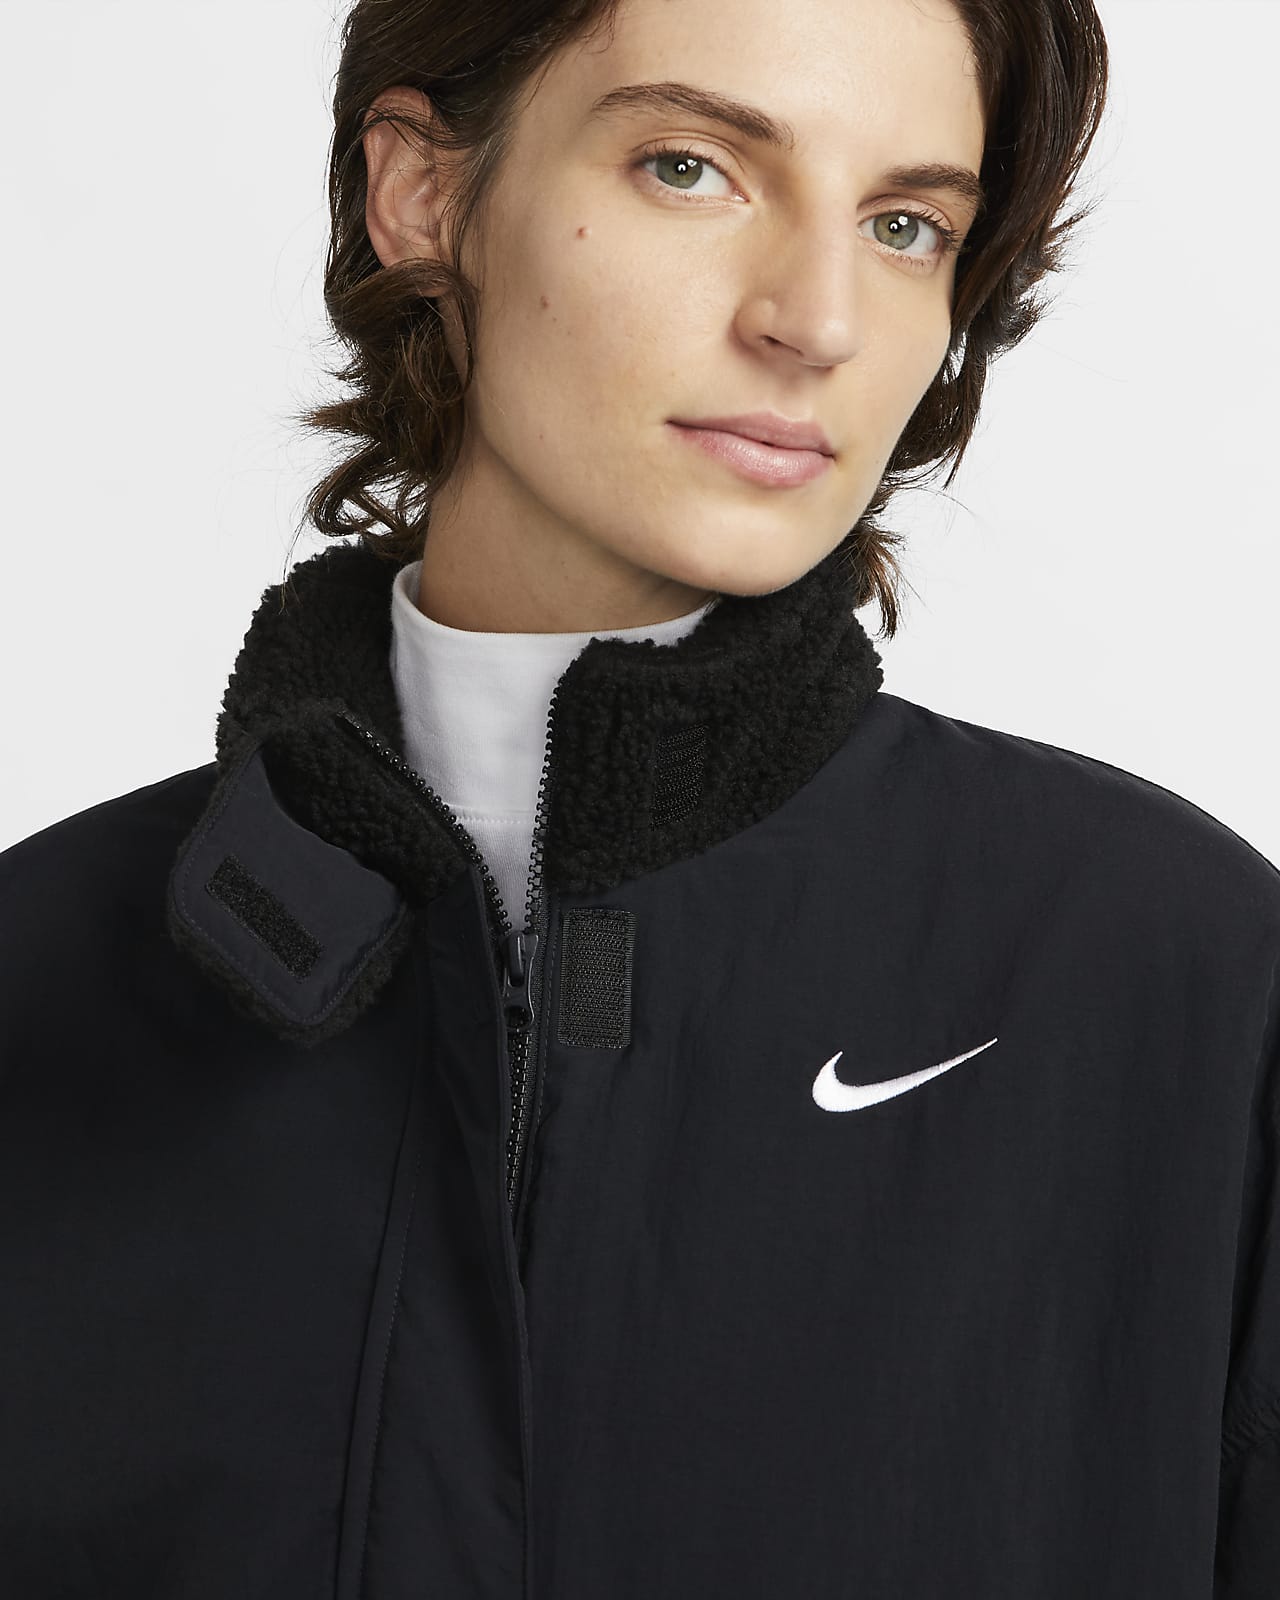 Vævet Nike Essential-fleeceforet jakke til kvinder. Nike DK